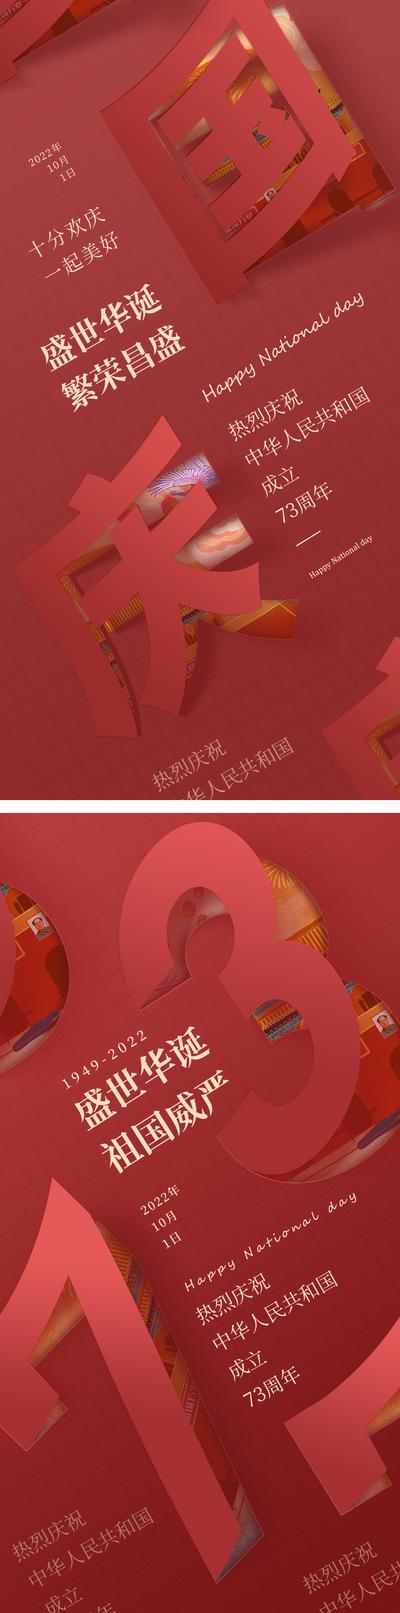 南门网 海报 公历节日 国庆节 73周年 文字 创意 翻页 红色